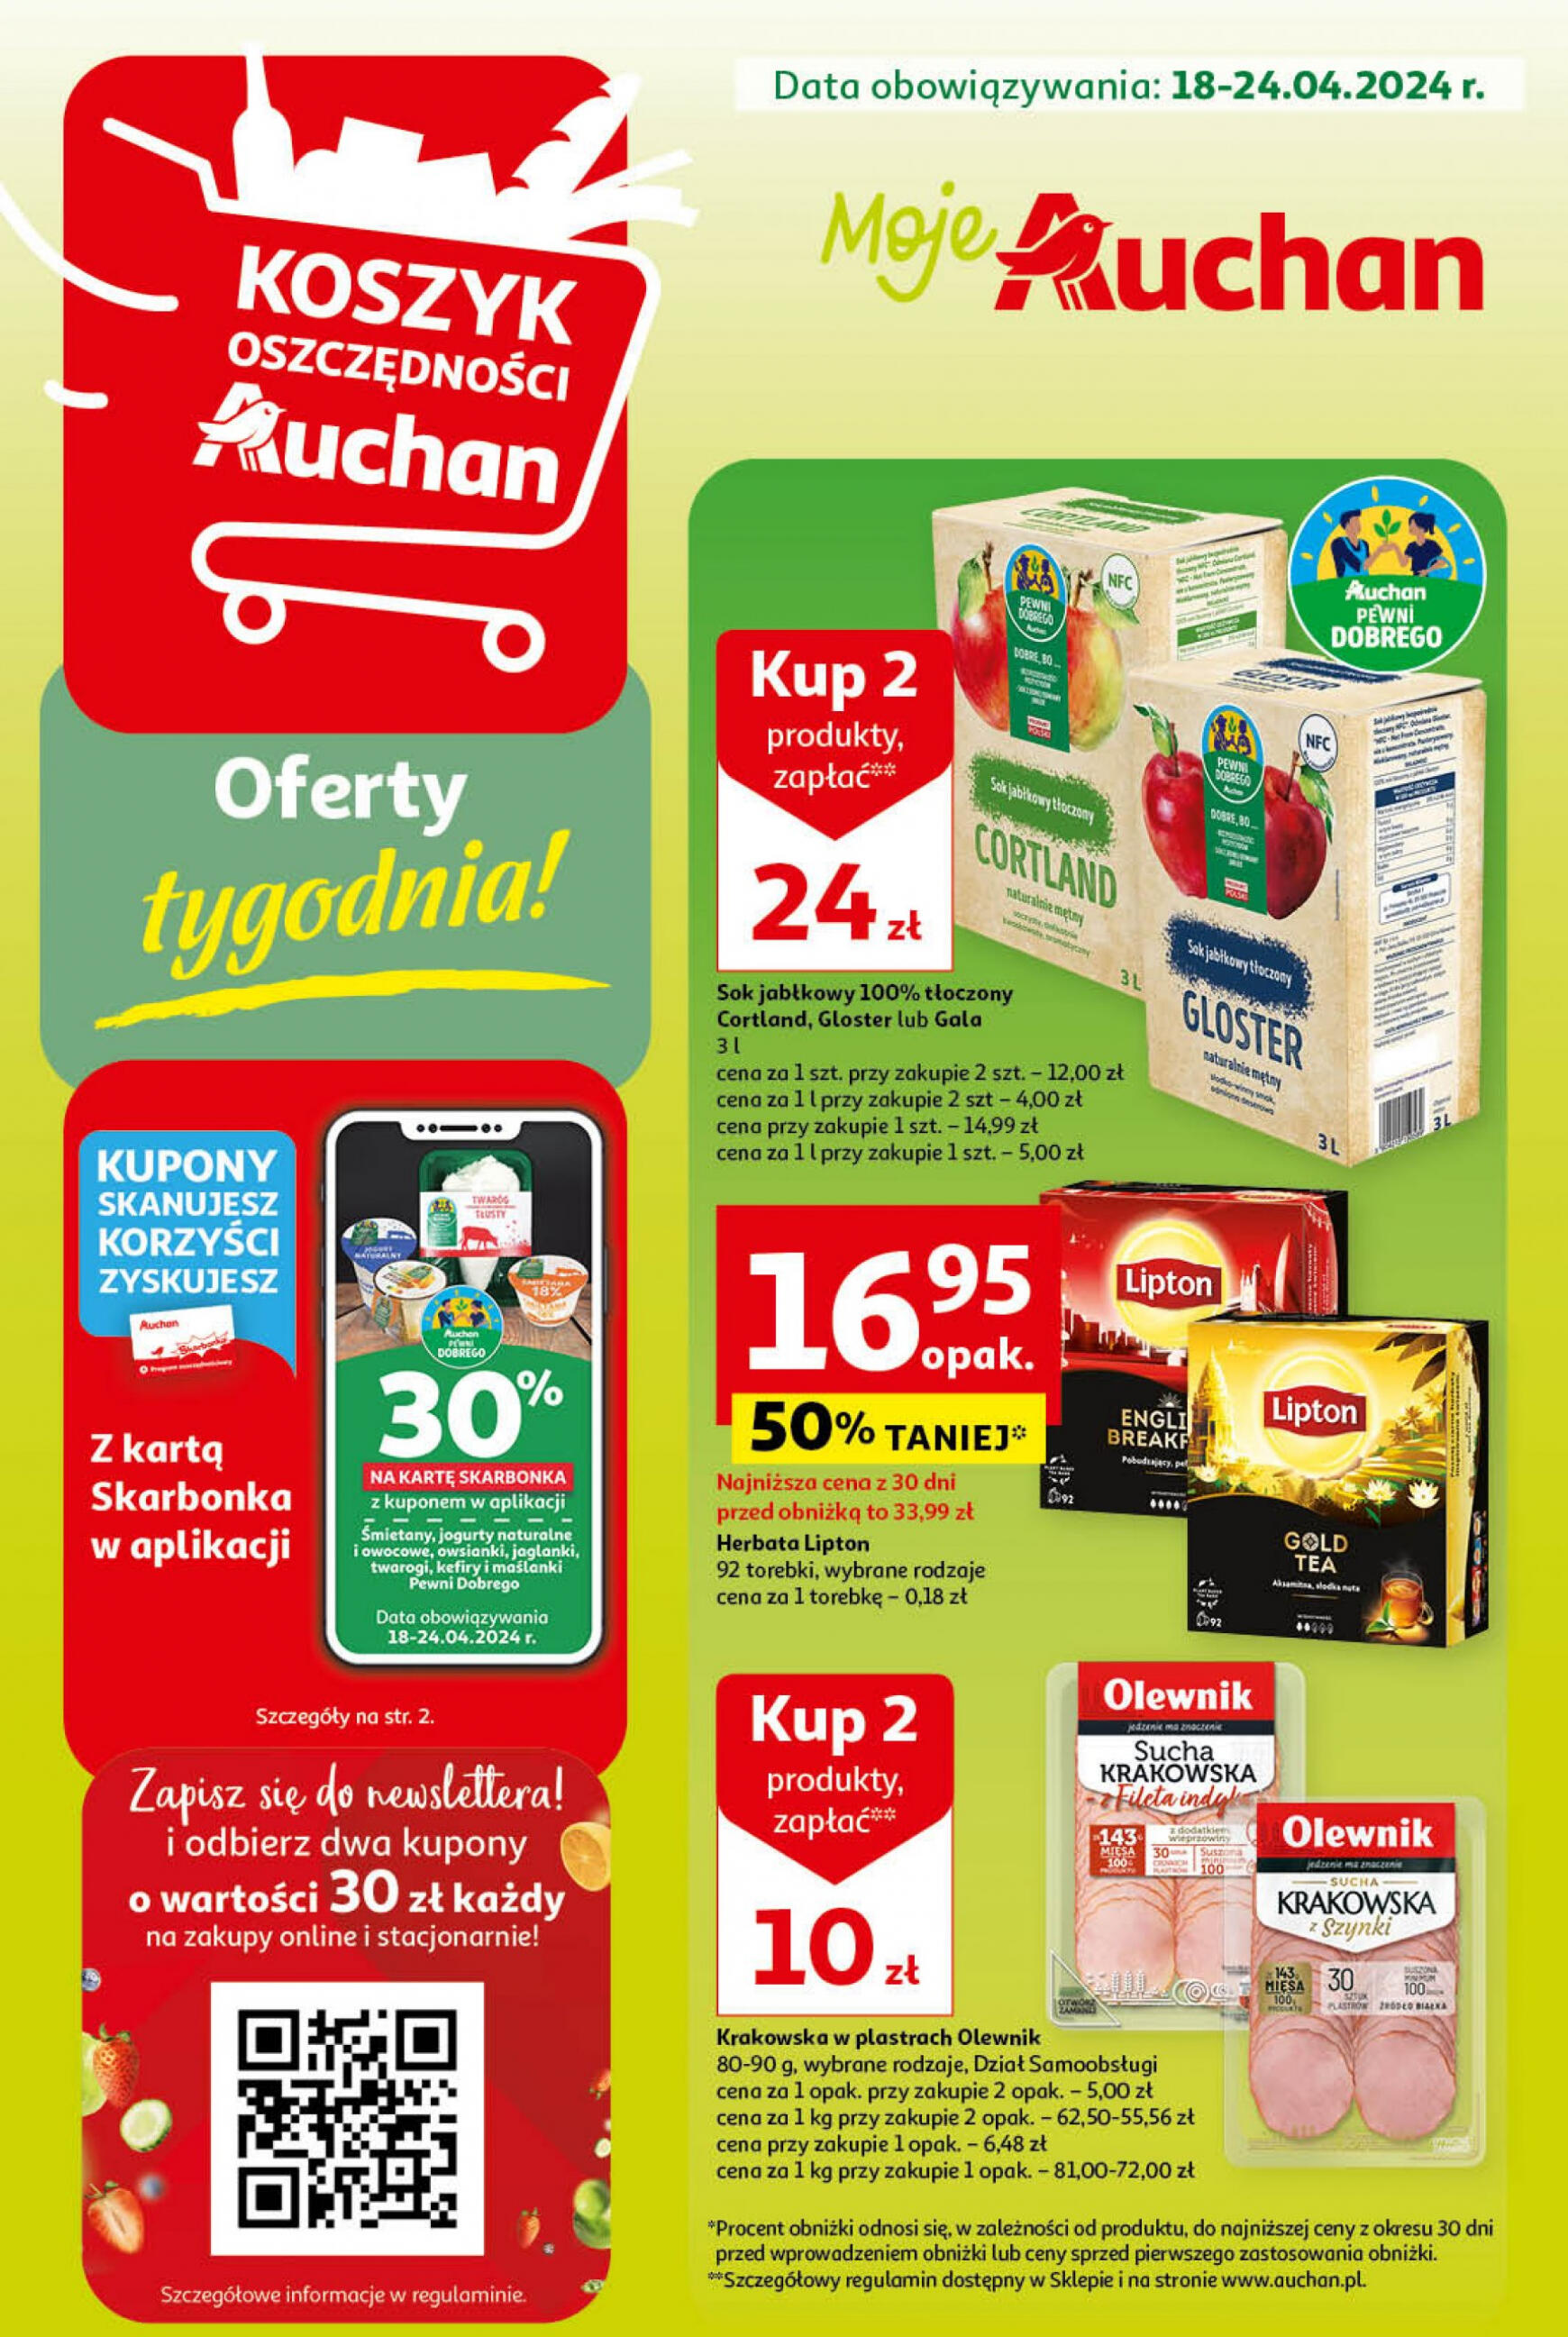 auchan - Moje Auchan - Gazetka Oferty tygodnia! gazetka aktualna ważna od 18.04. - 24.04. - page: 1